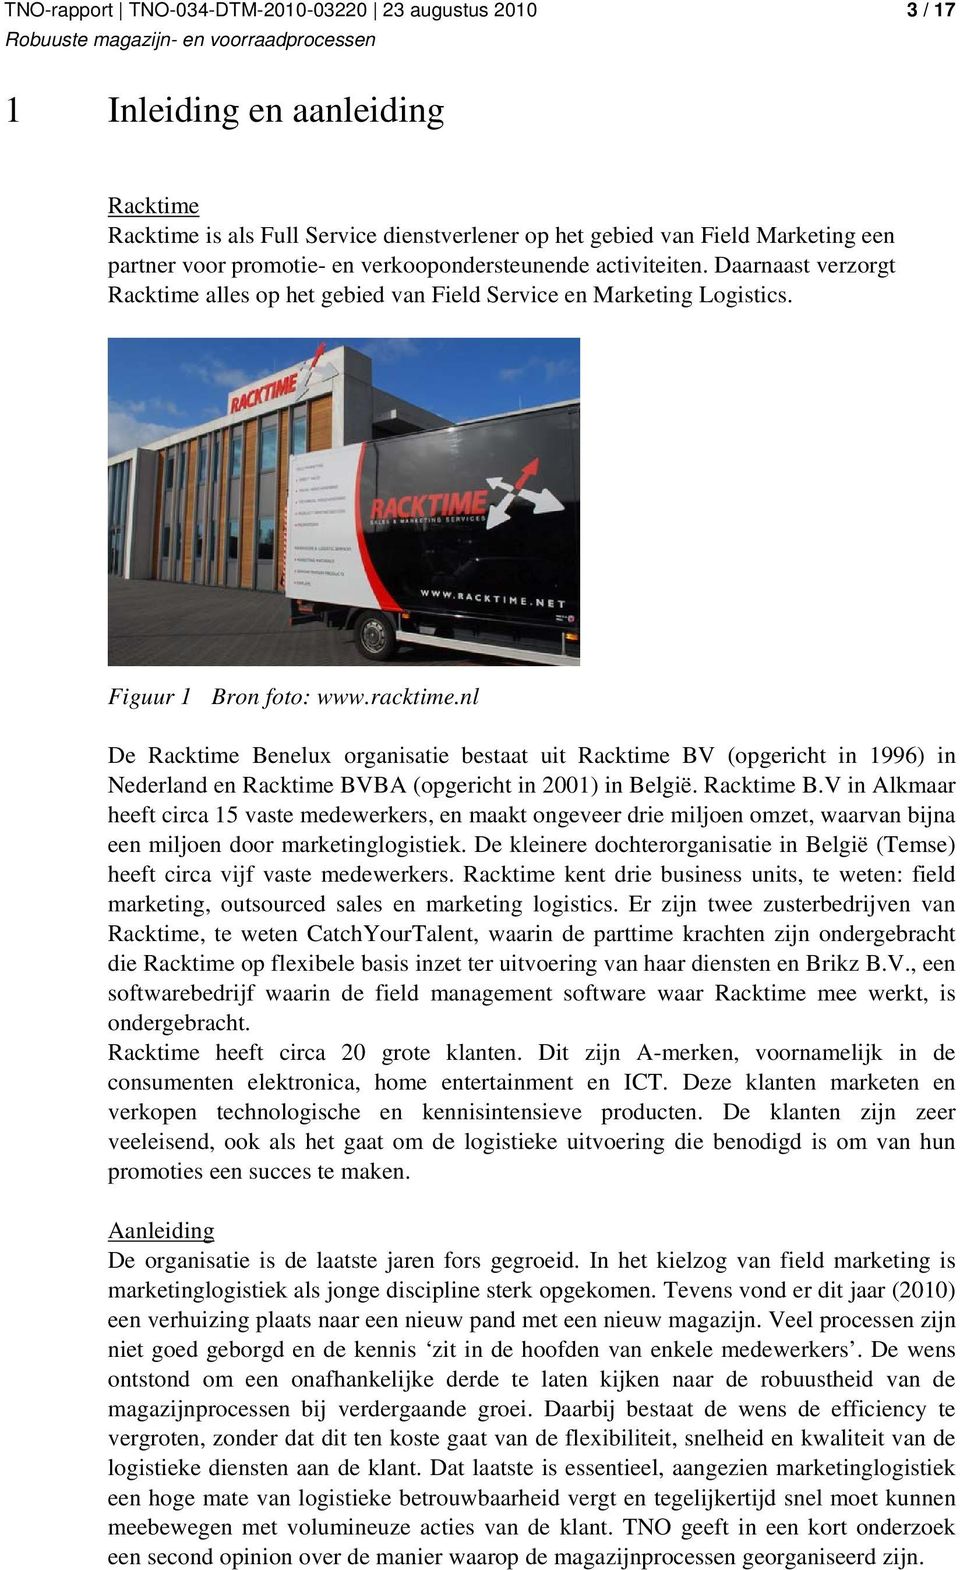 nl De Racktime Benelux organisatie bestaat uit Racktime BV (opgericht in 1996) in Nederland en Racktime BVBA (opgericht in 2001) in België. Racktime B.V in Alkmaar heeft circa 15 vaste medewerkers, en maakt ongeveer drie miljoen omzet, waarvan bijna een miljoen door marketinglogistiek.